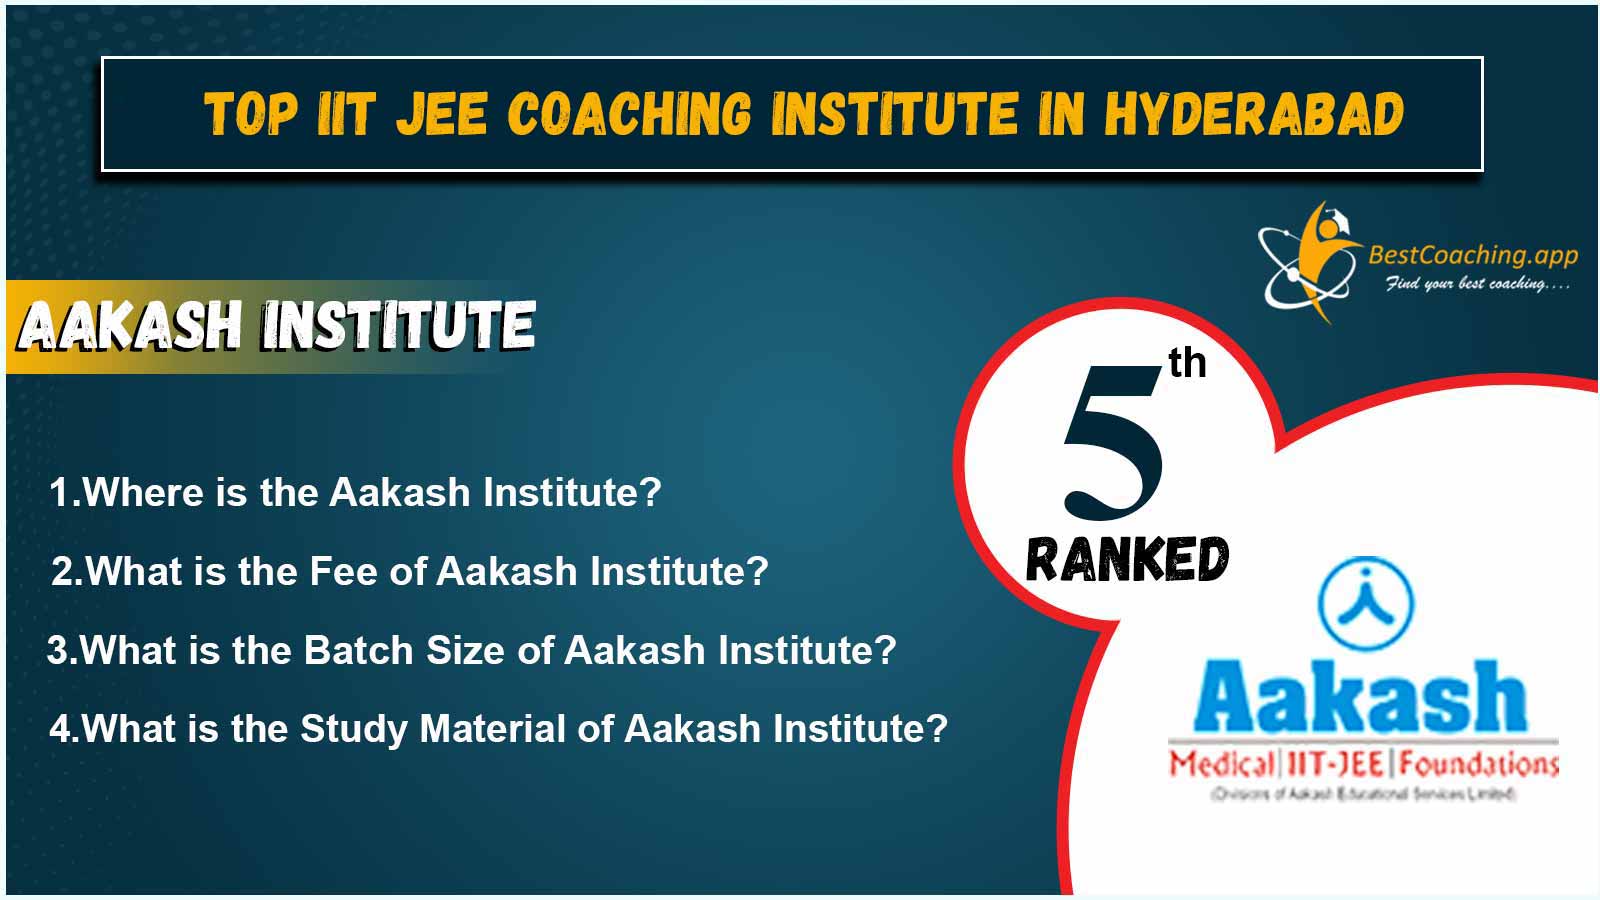 Top IIT JEE Coaching Centers In Hyderabad